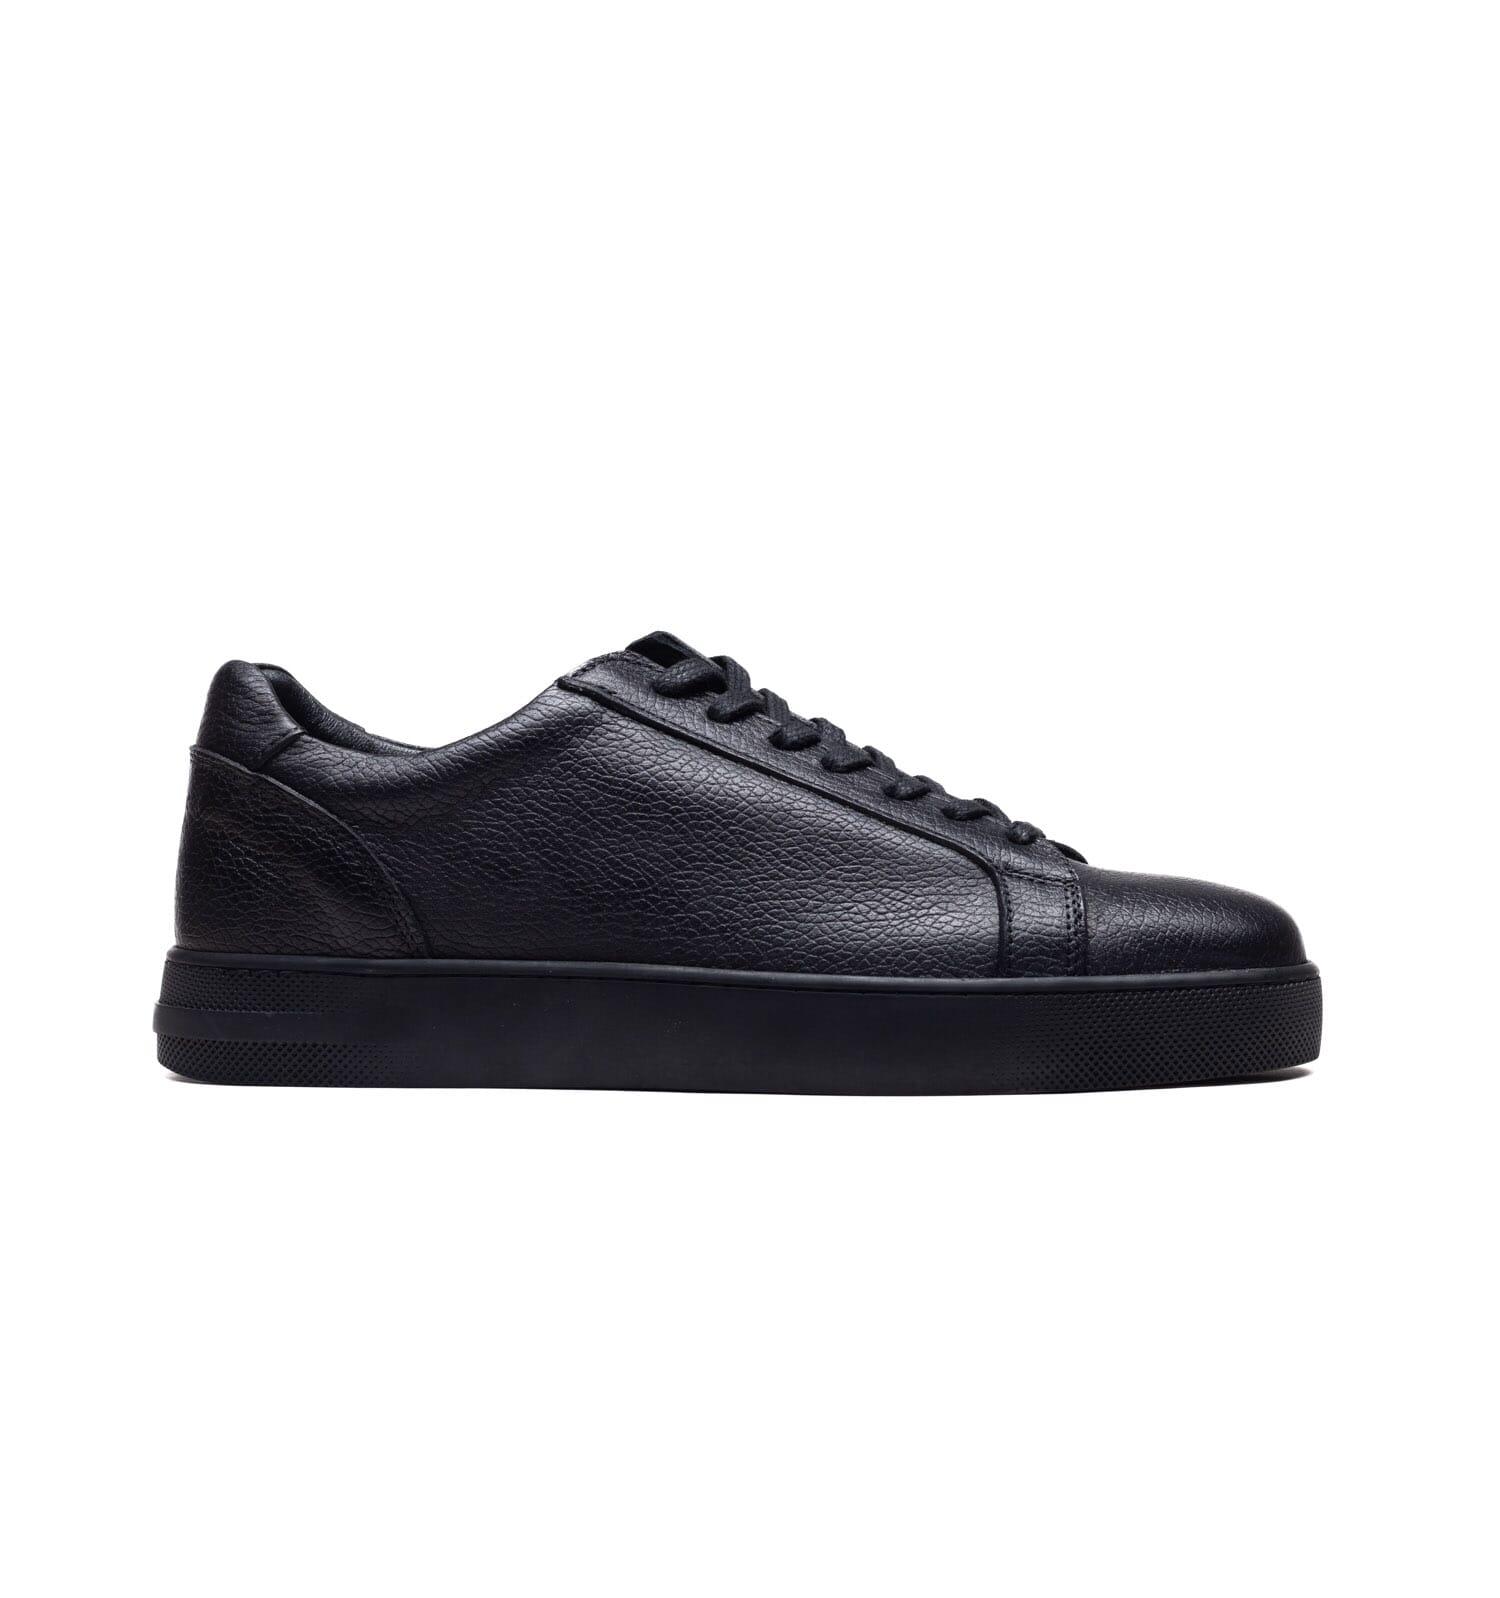 Bulletti – 2215 -Black – Perocili Shoes